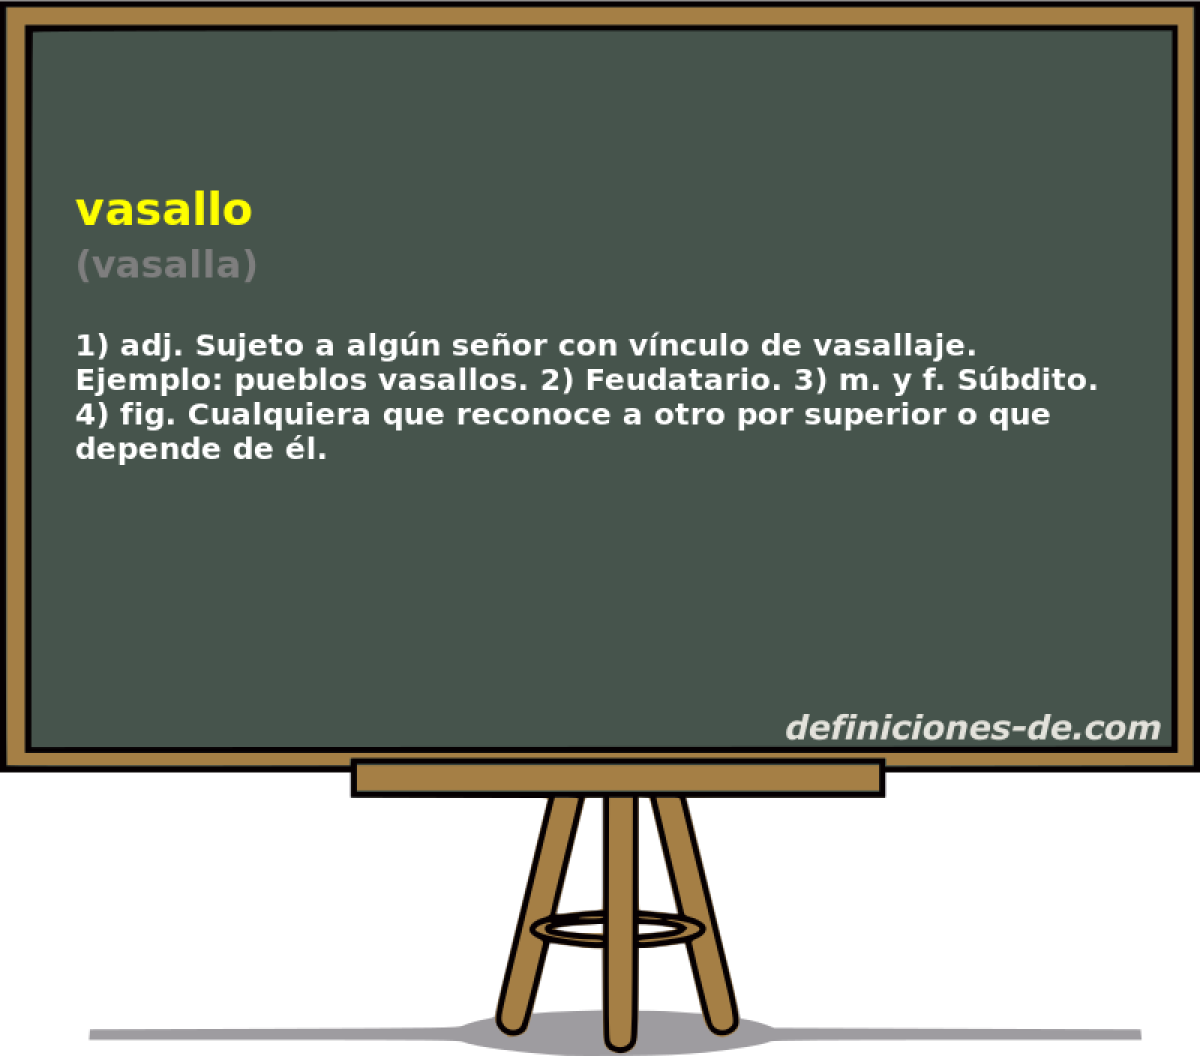 vasallo (vasalla)